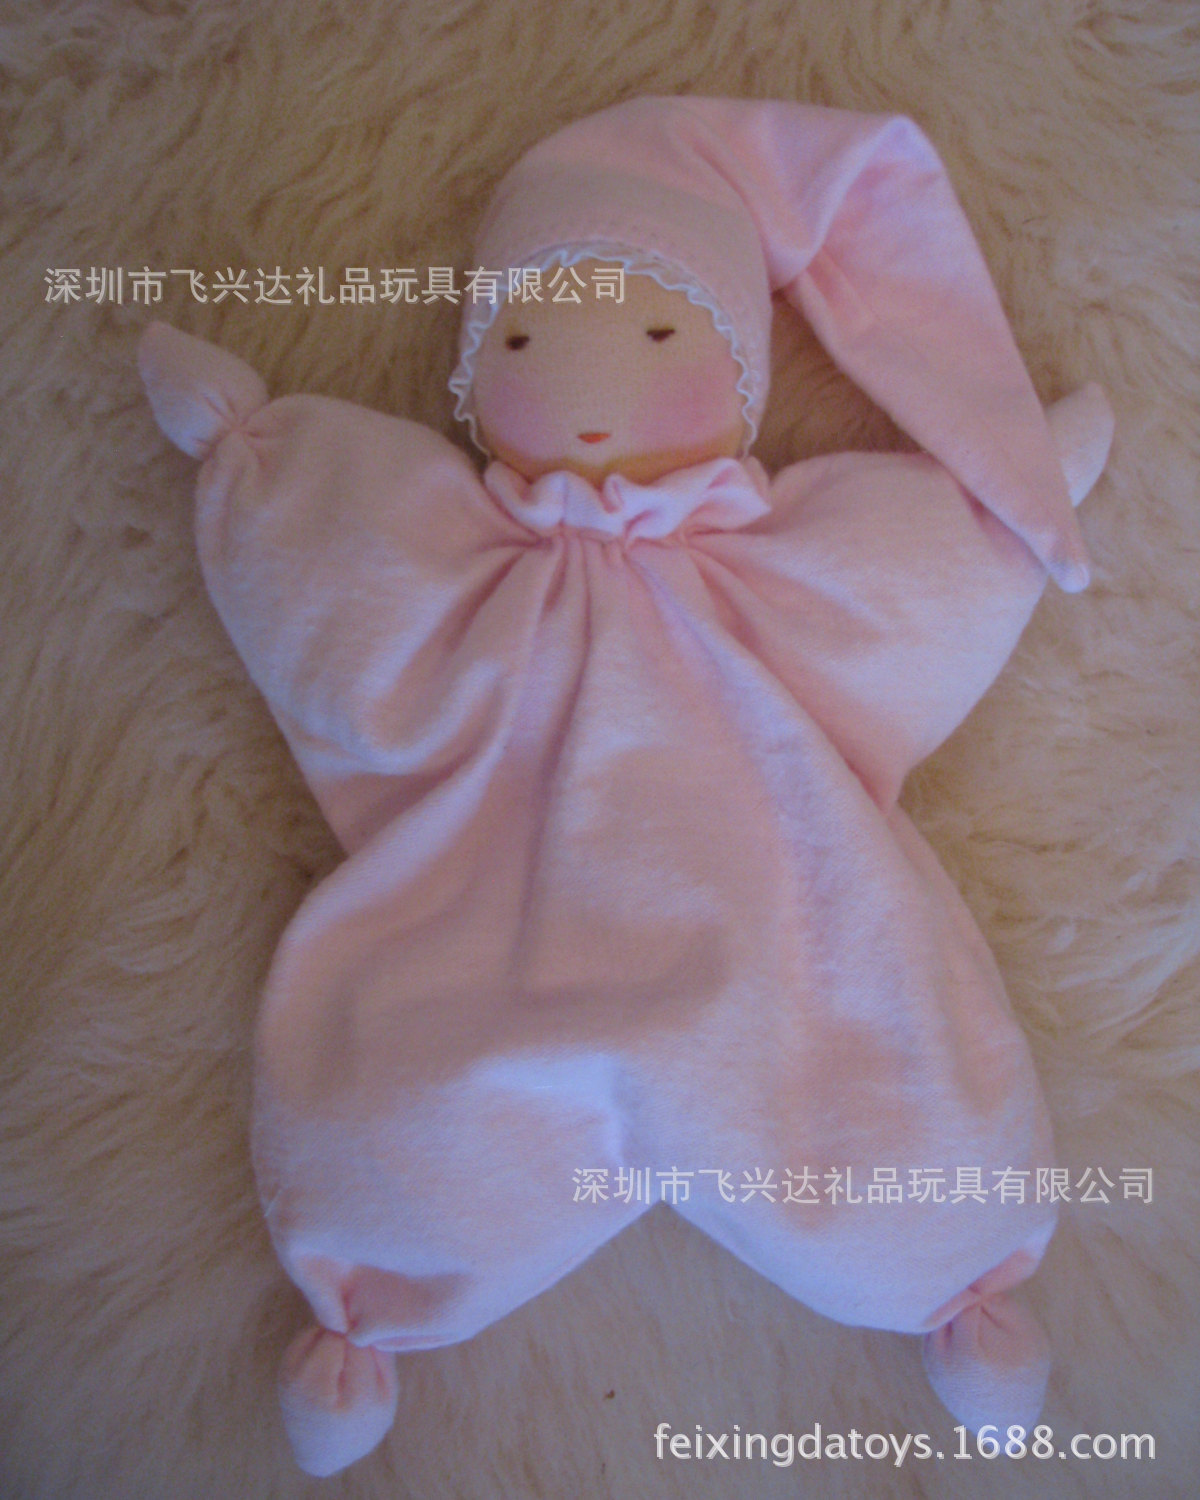 Cuddle Baby Doll 25CM